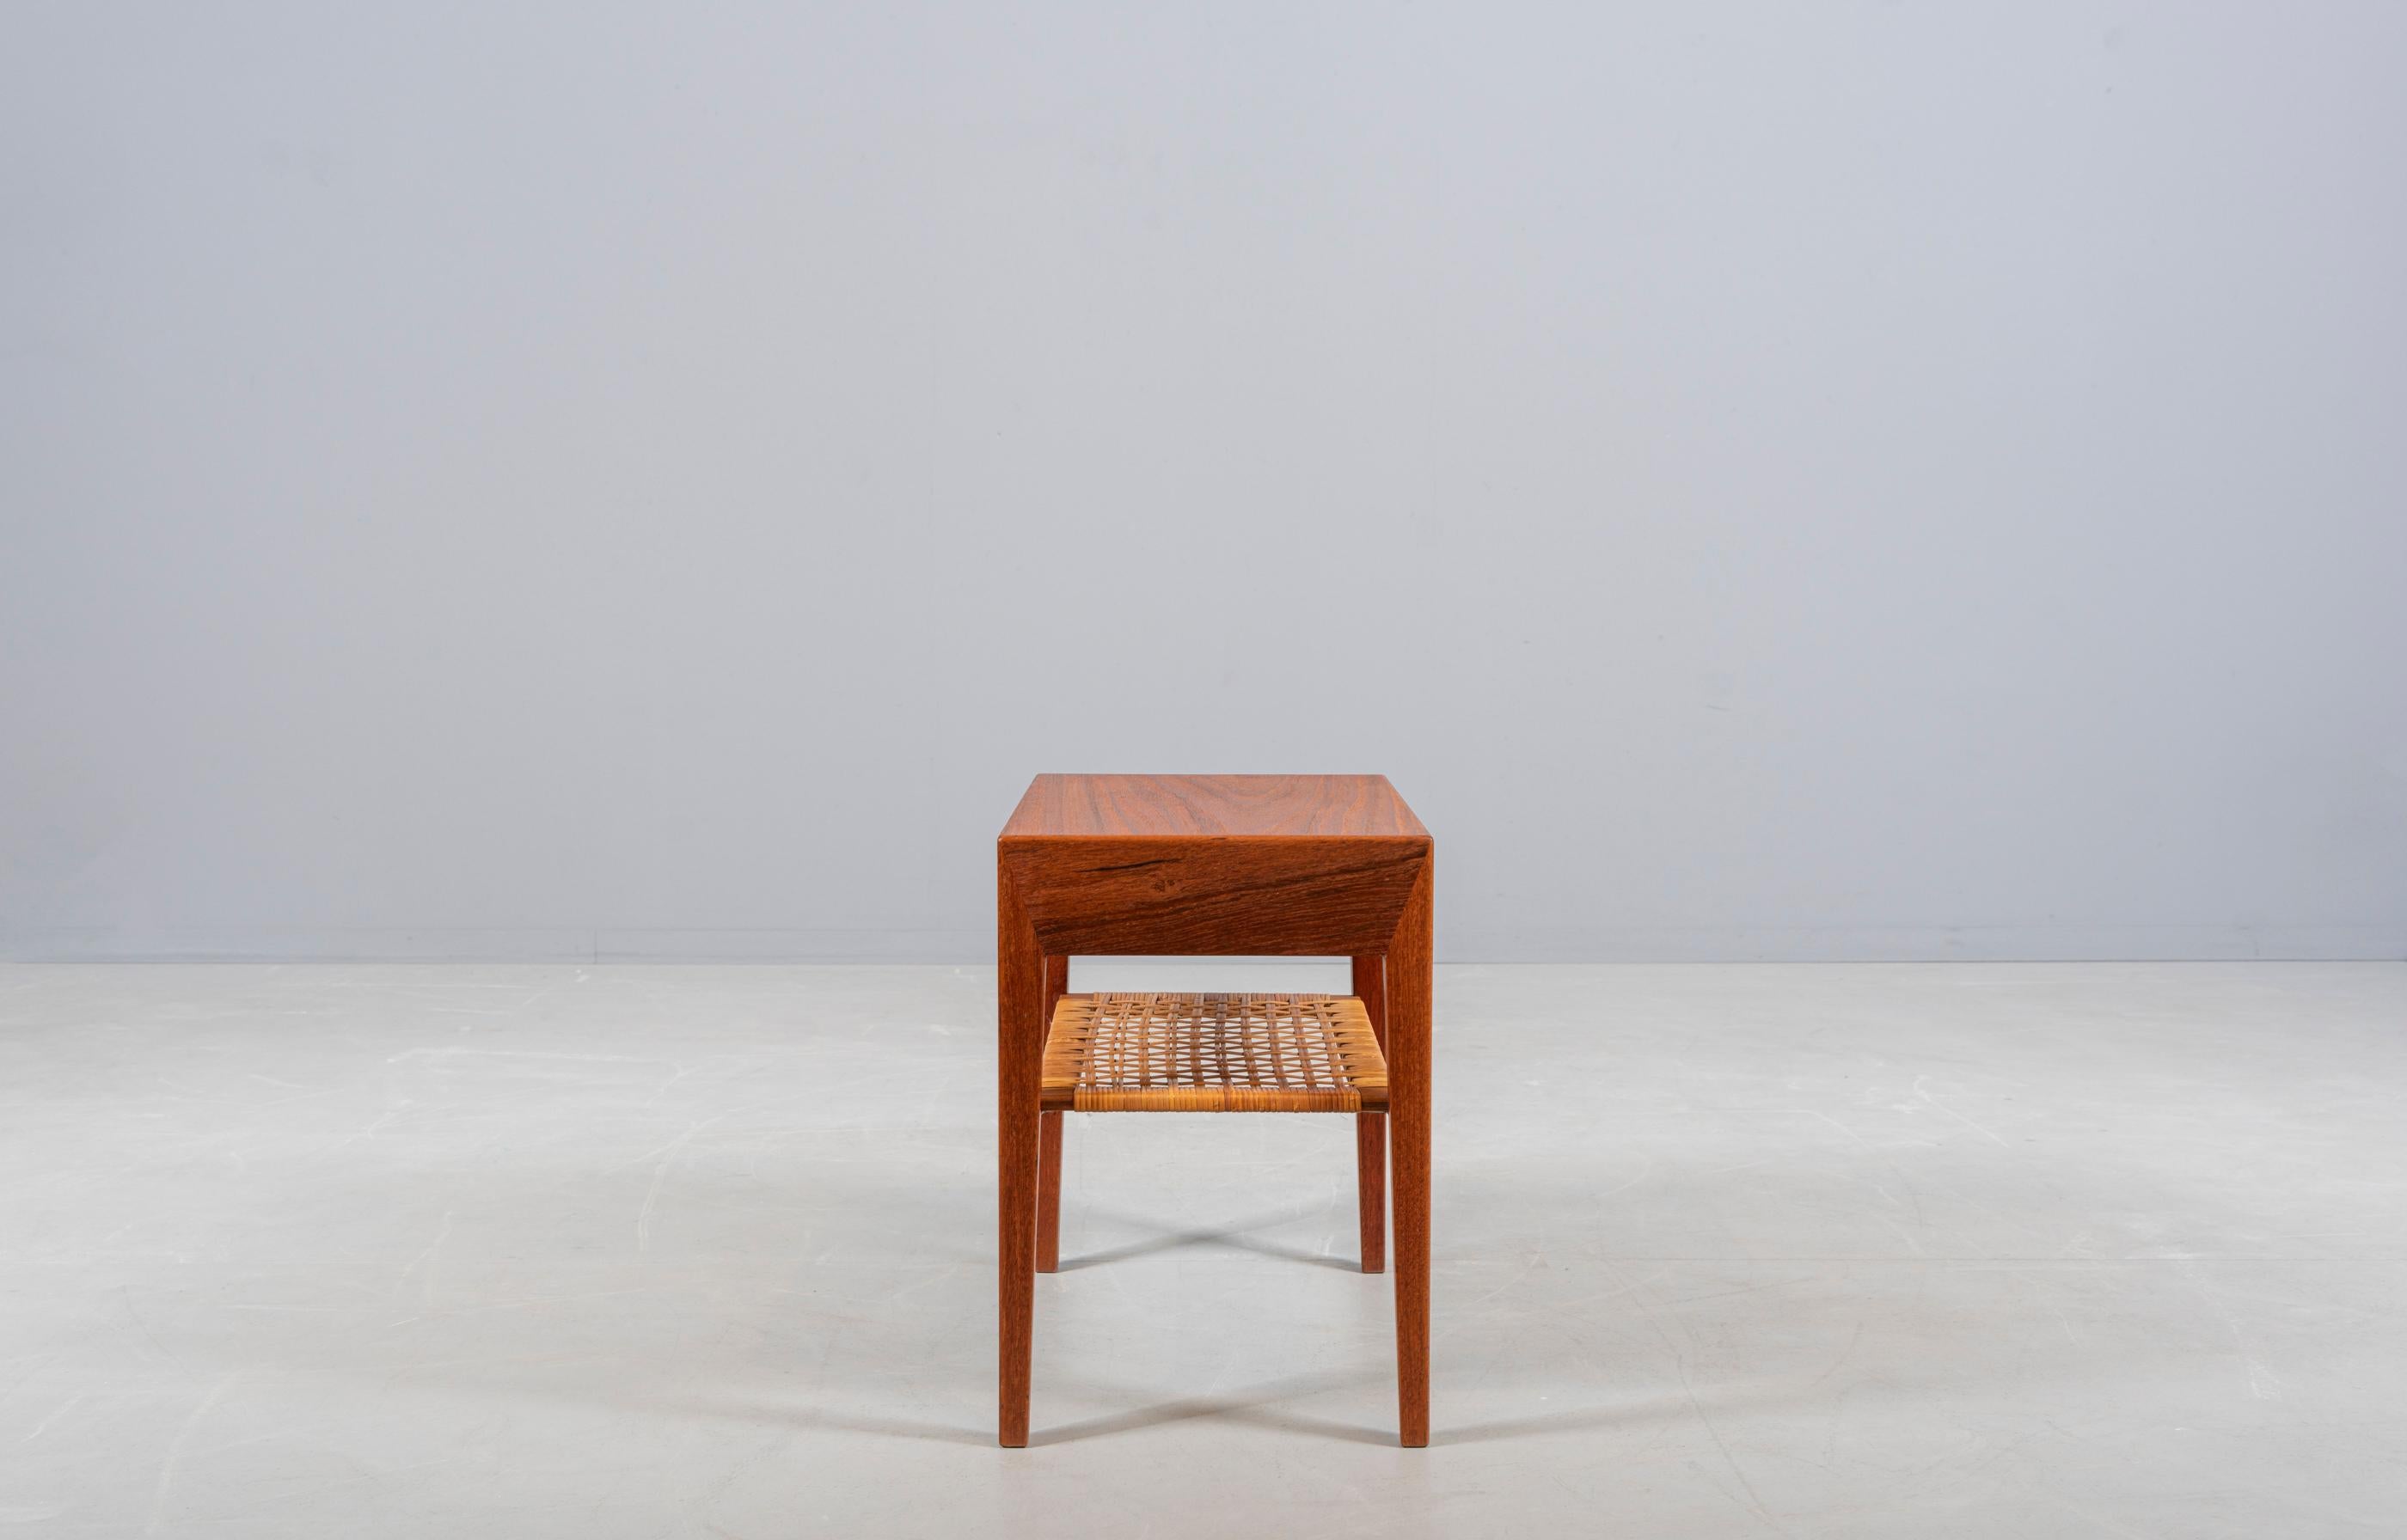 Petite table d'appoint ou de nuit en teck. Design de Severin Hansen Jr, fabriqué par Haslev Furniture au Danemark dans les années 1950. Un tiroir, une tablette de canne. De beaux détails.

